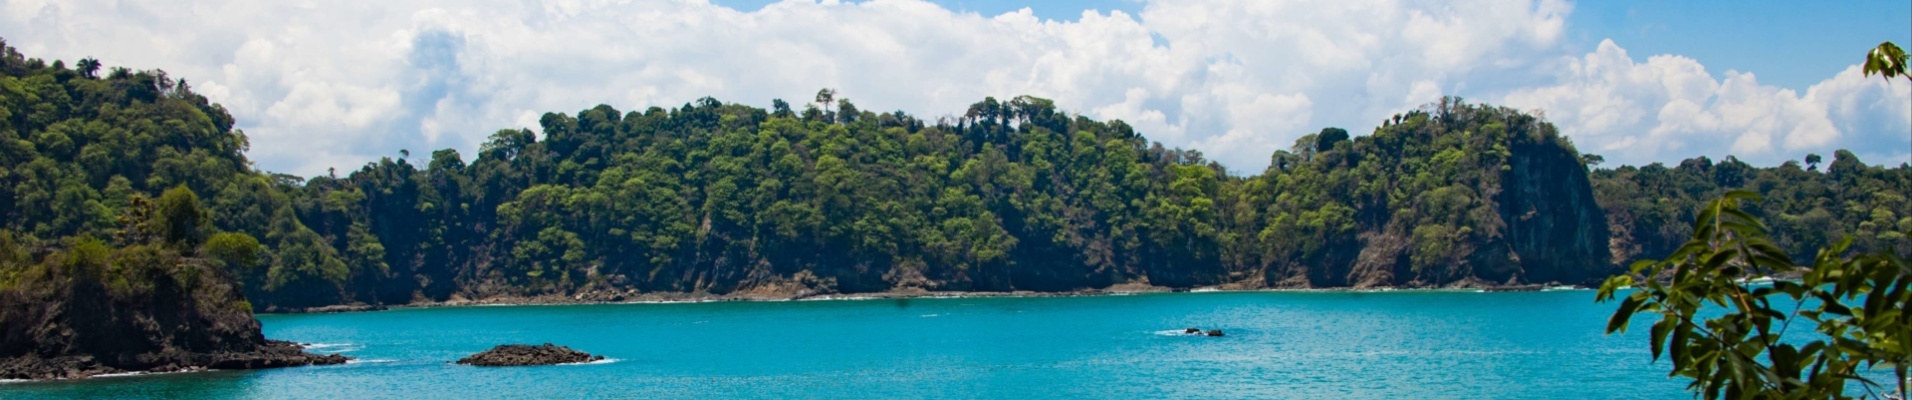 manuel-antonio-paysage-costa-rica